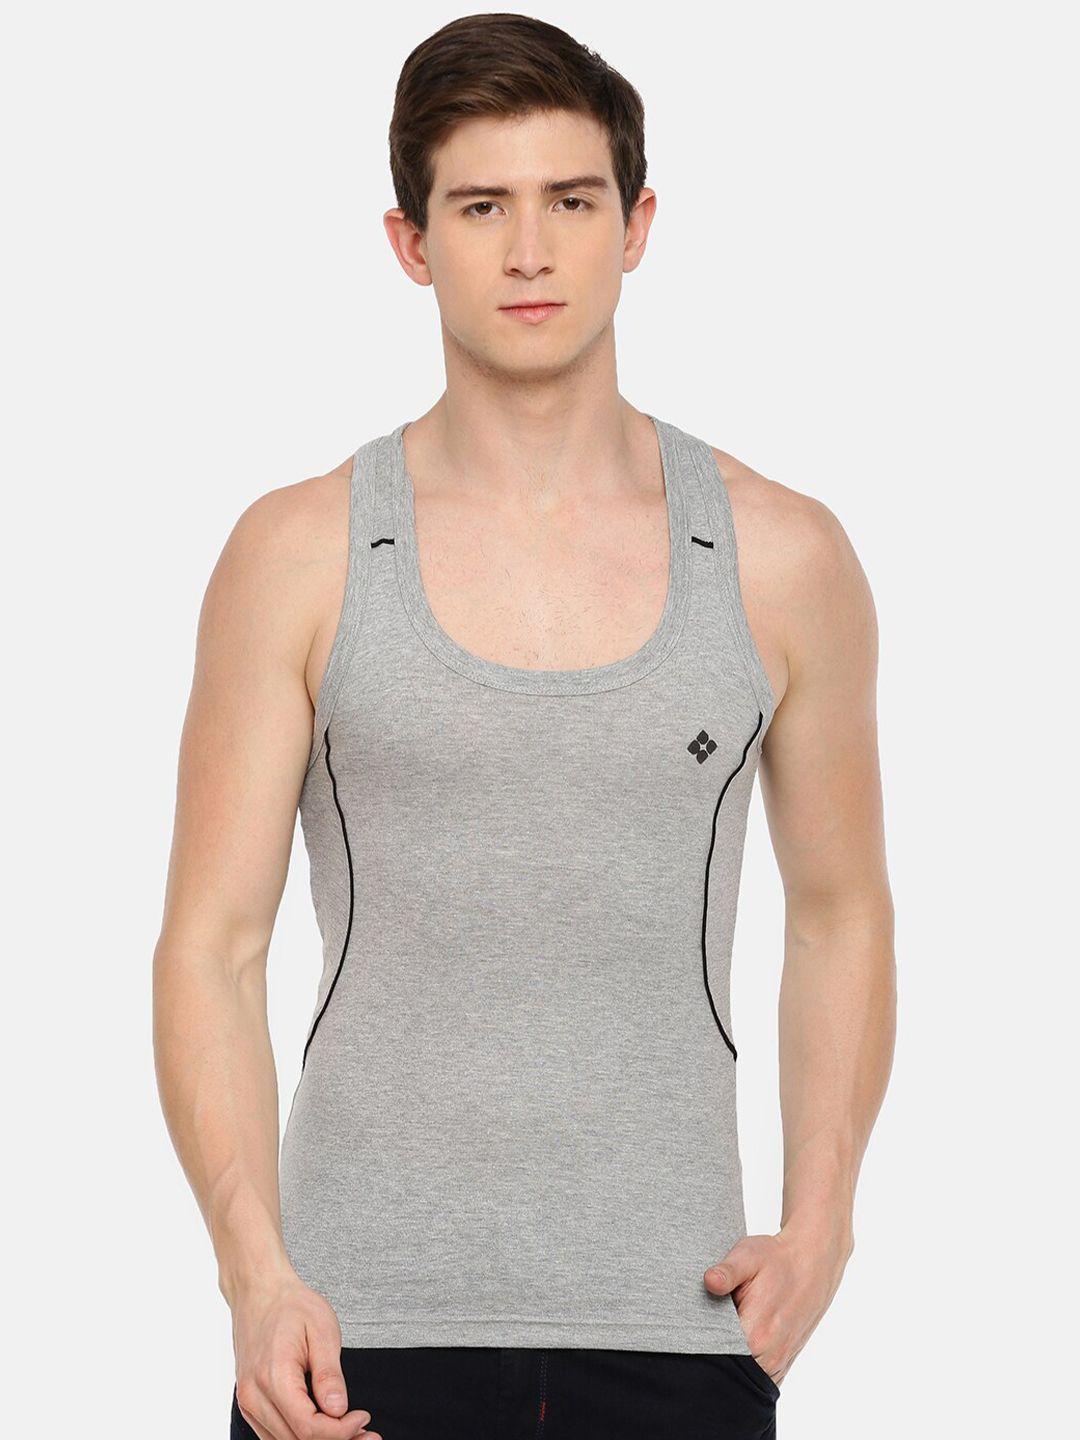 dollar bigboss assorted cotton gym innerwear vest